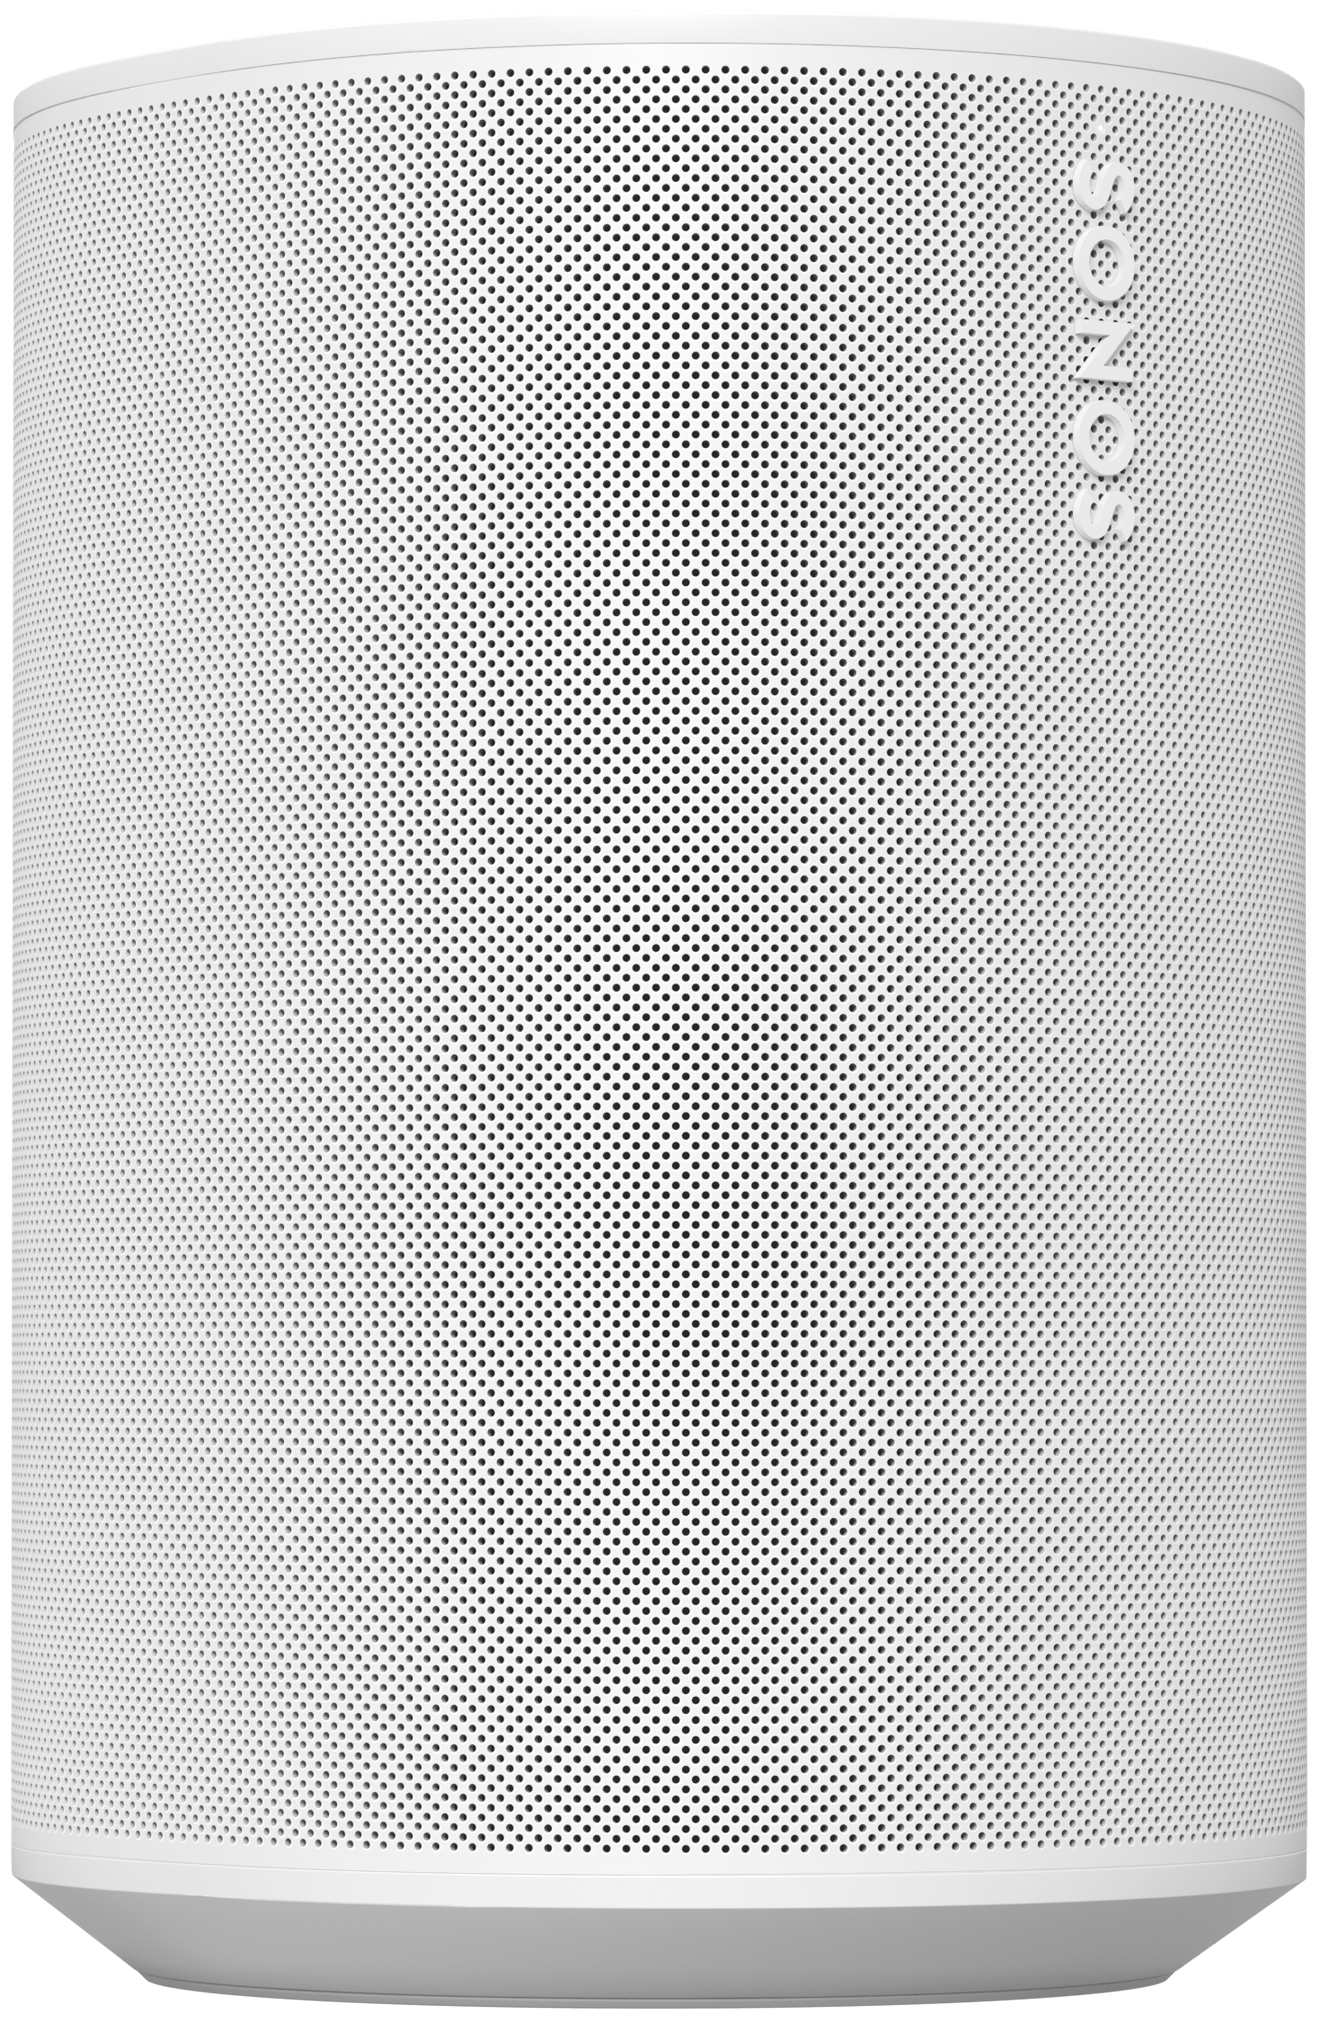 Sonos Era von Technomarkt 100 Lautsprecher (Weiß) Bluetooth Wlan expert